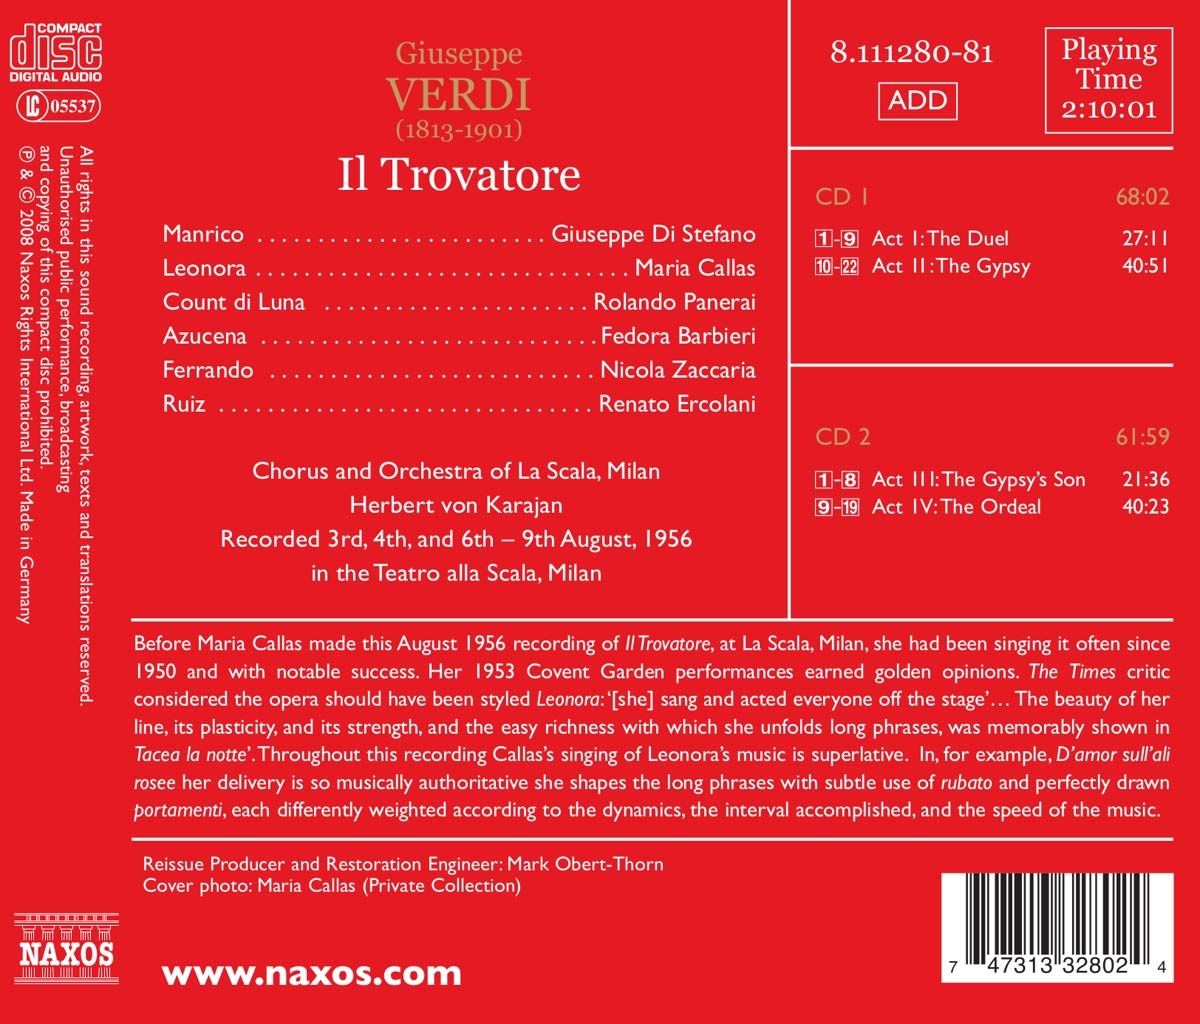 Maria Callas 베르디: 일 트로바토레 (Verdi: Il Trovatore)